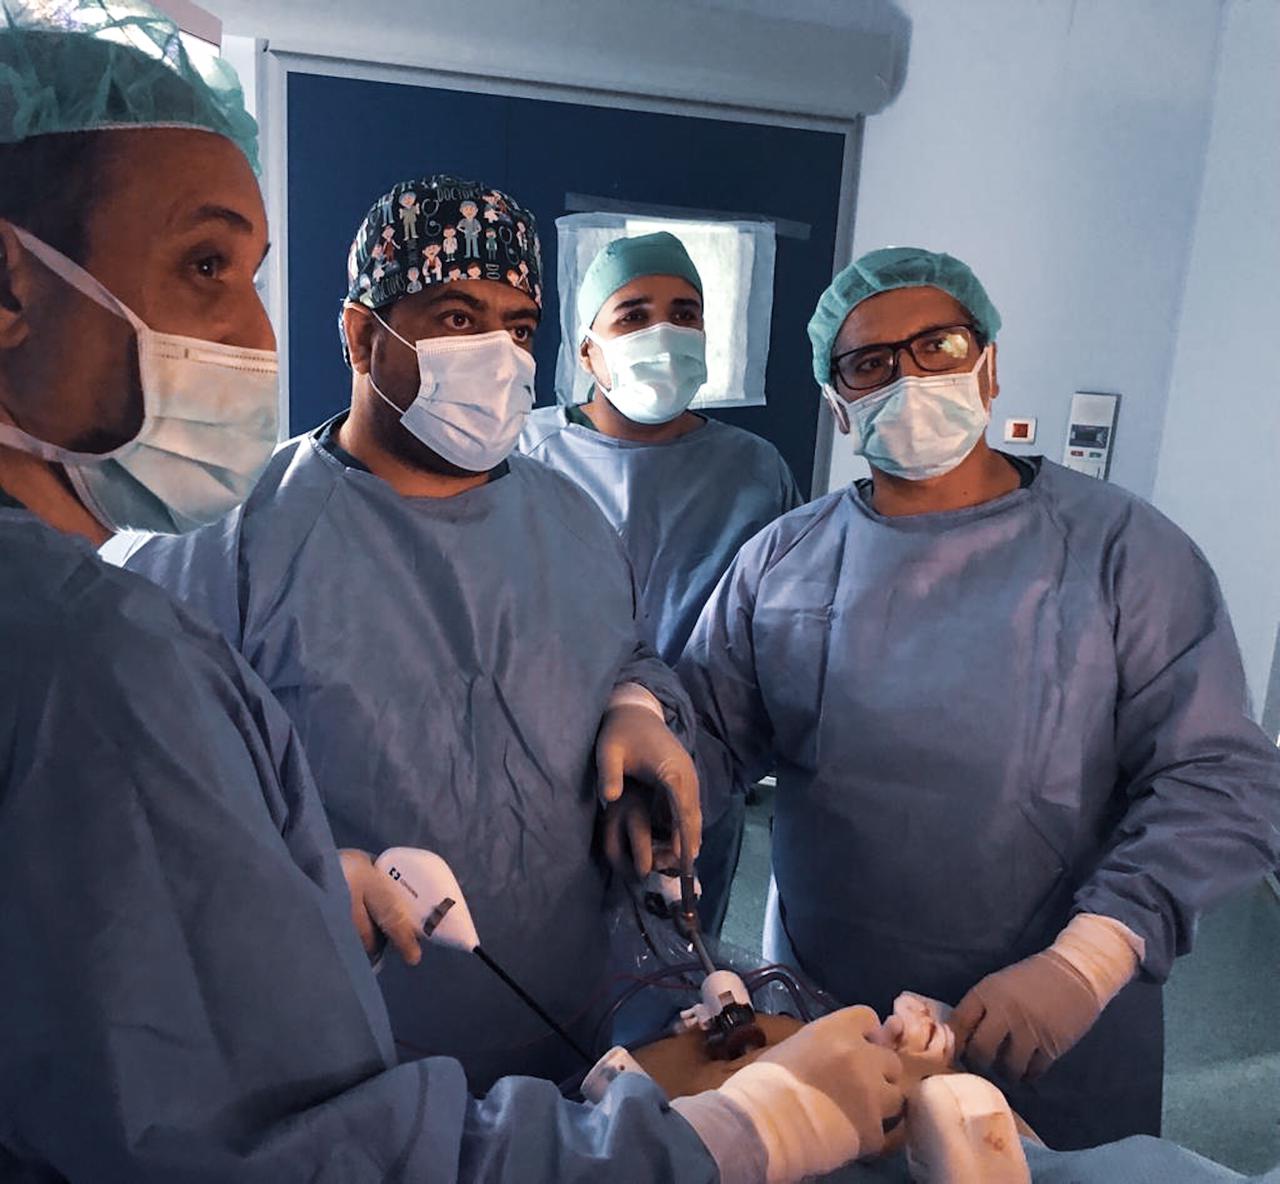 إجراء 500 عملية جراحة سمنة في مركز البدانة بالجوف